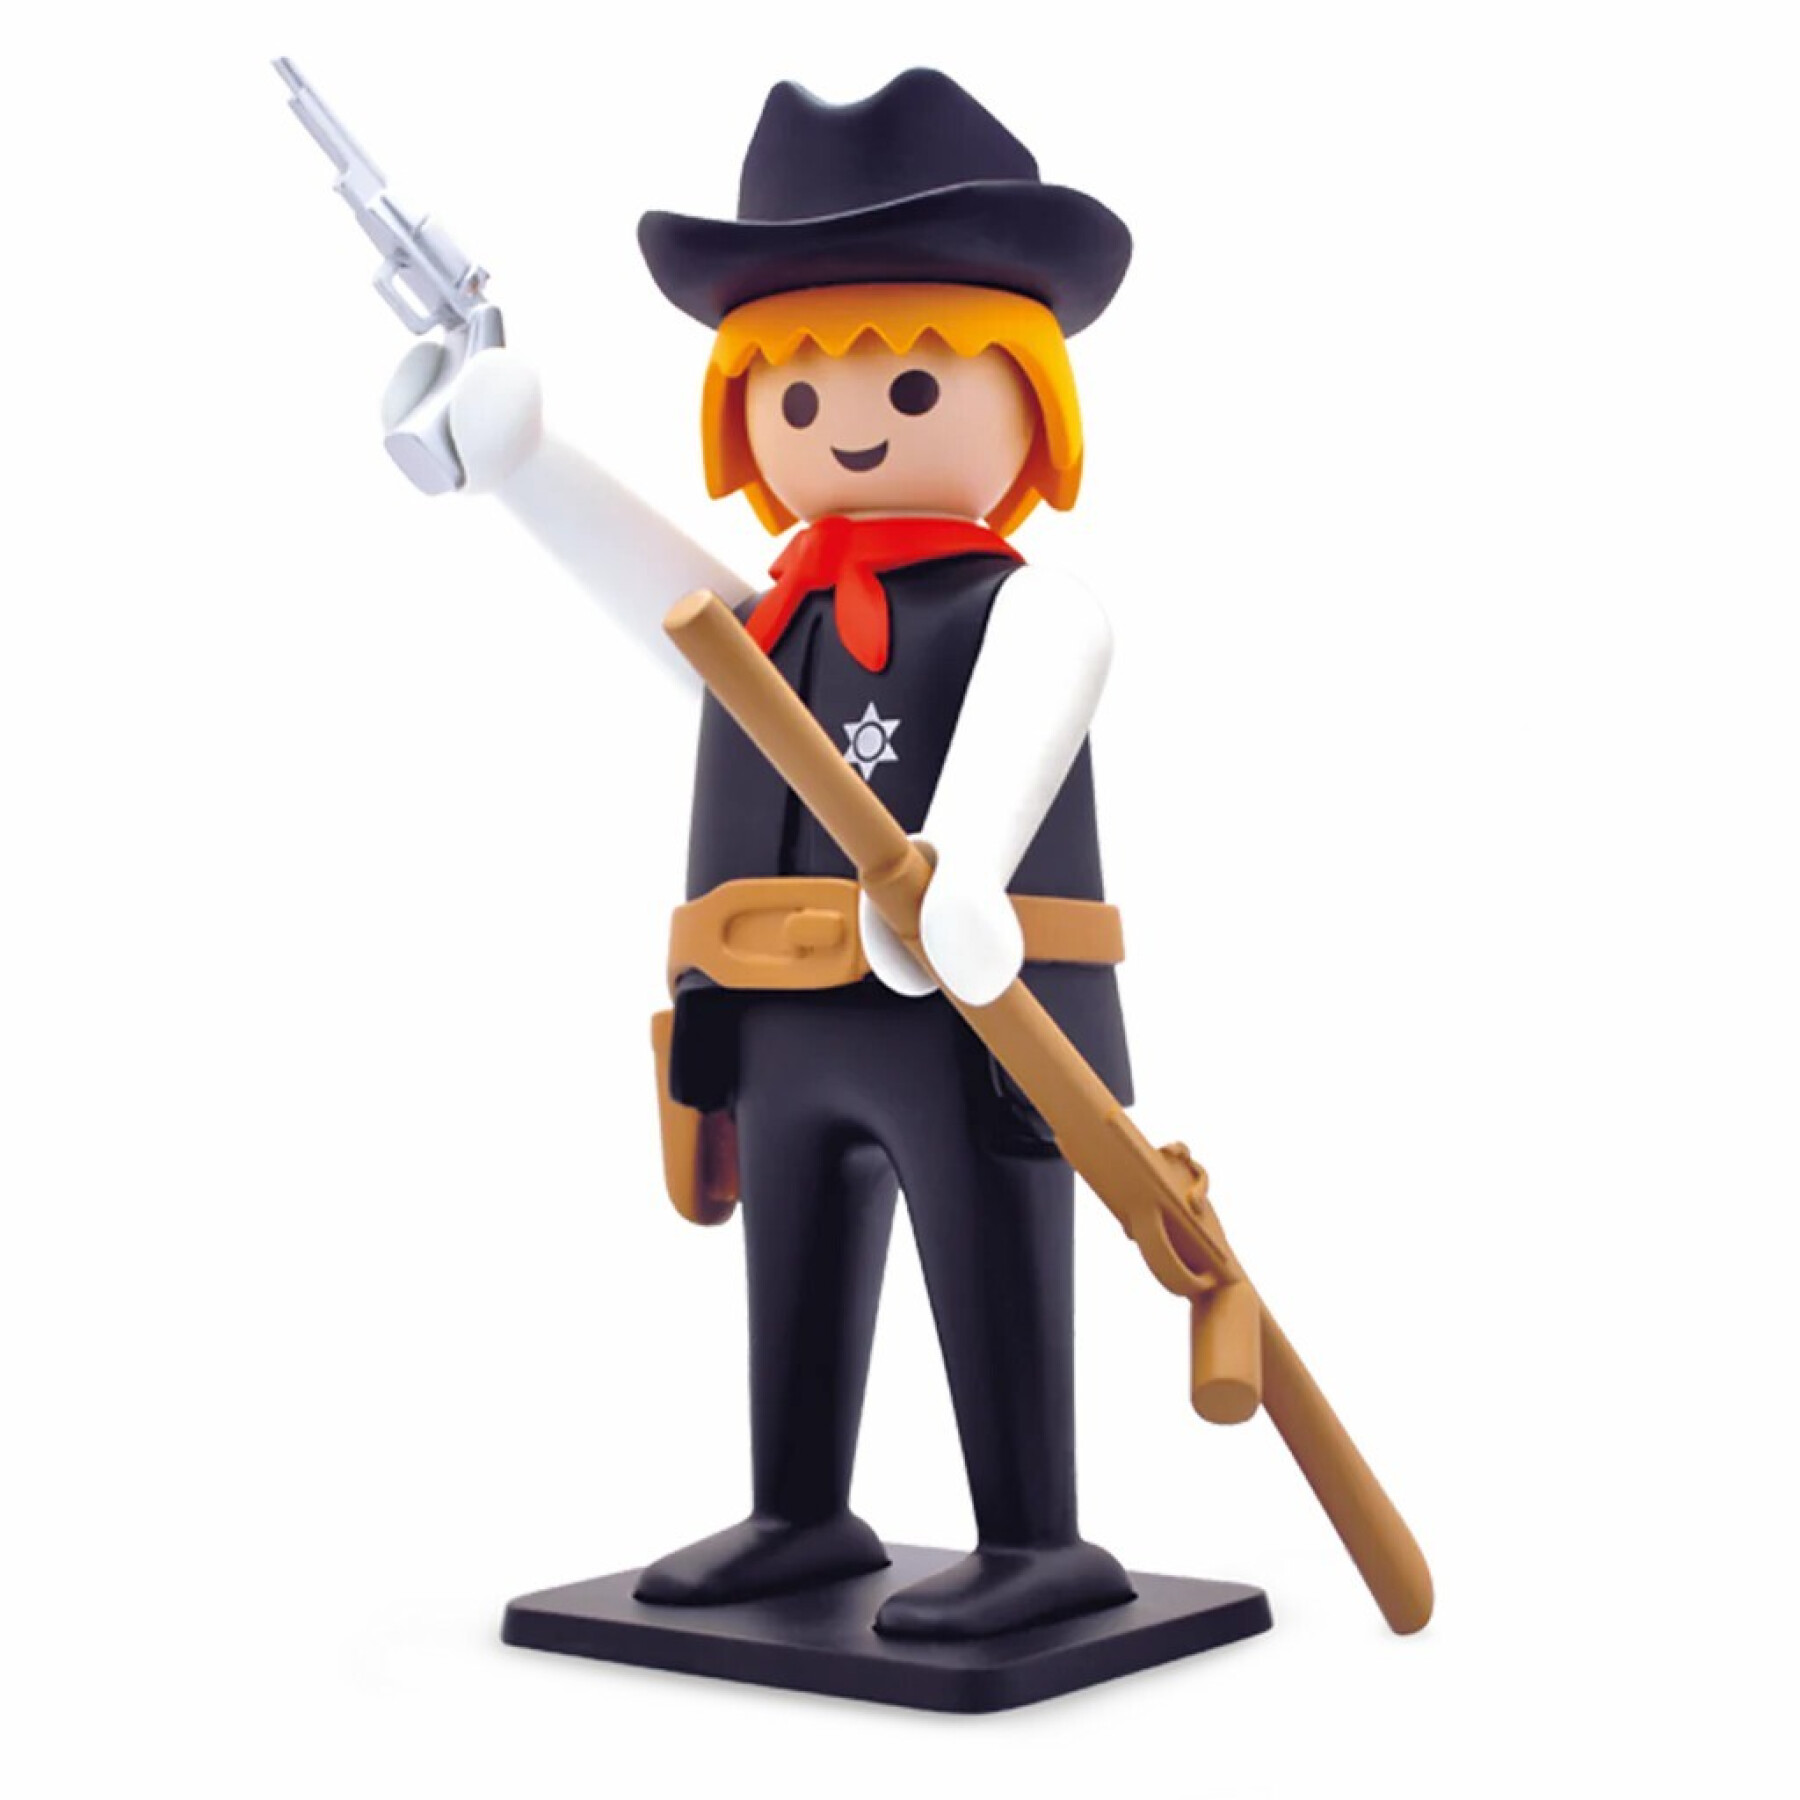 Estatueta de xerife vintage Plastoy Playmobil